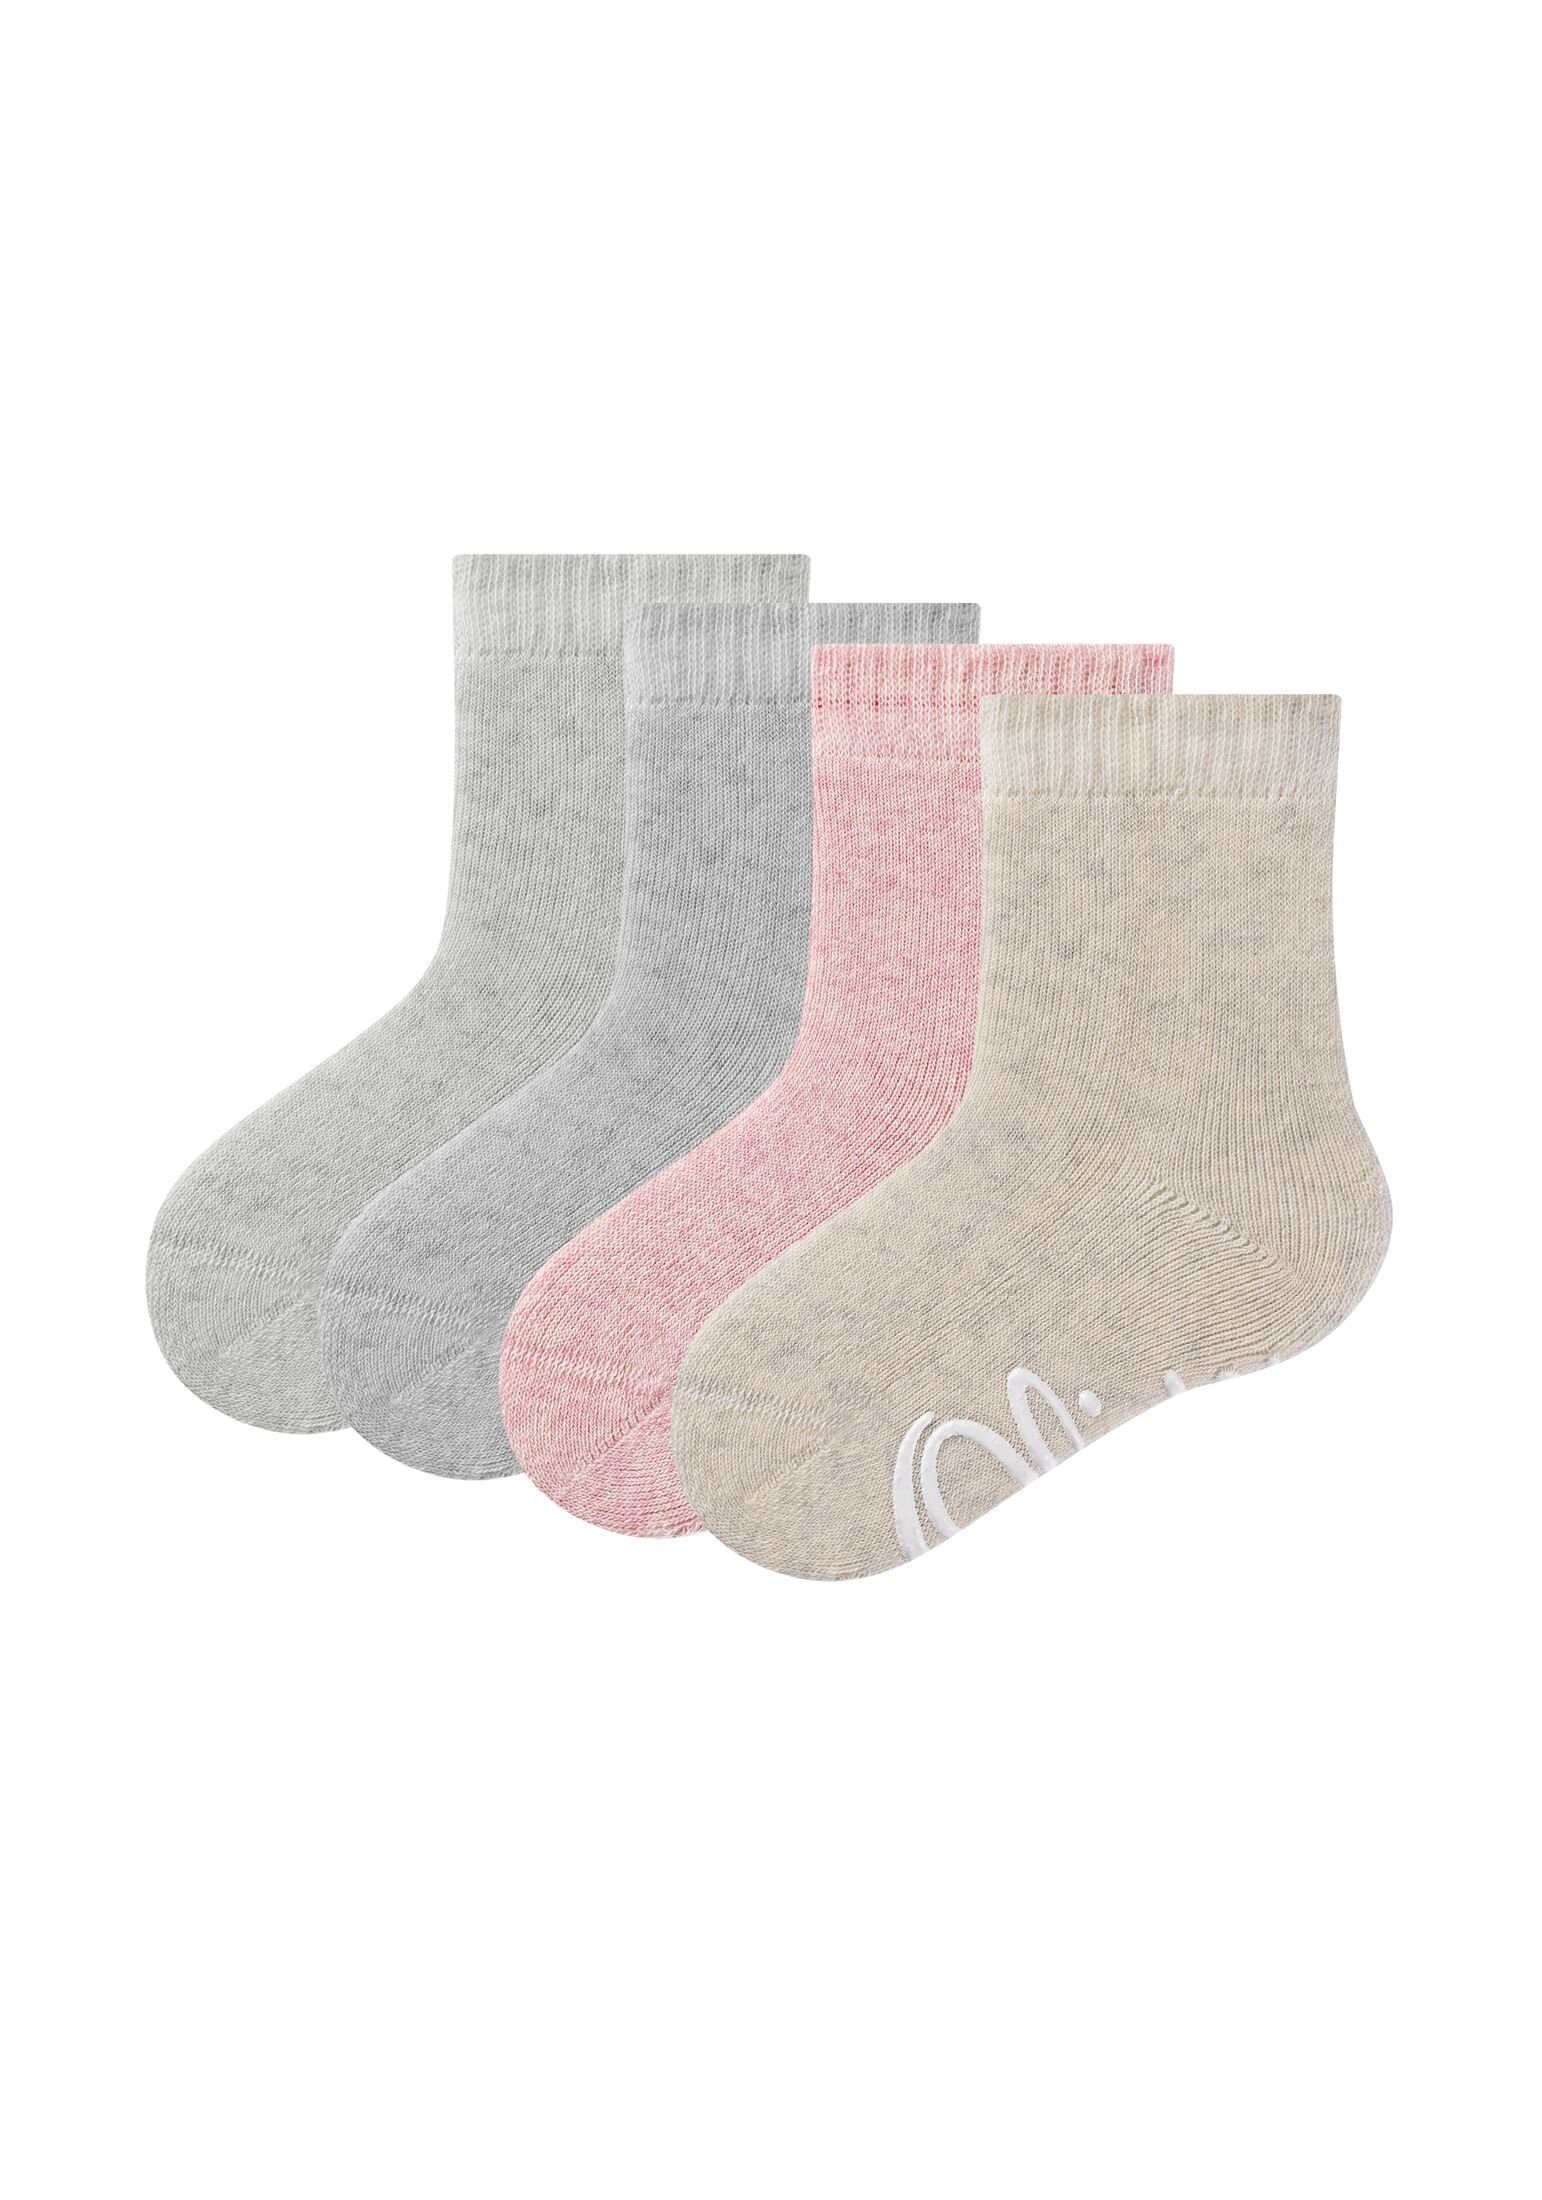 Socken Socken s.Oliver 4er Socken Set im Kinder s.Oliver von Tolle Pack, 4er für